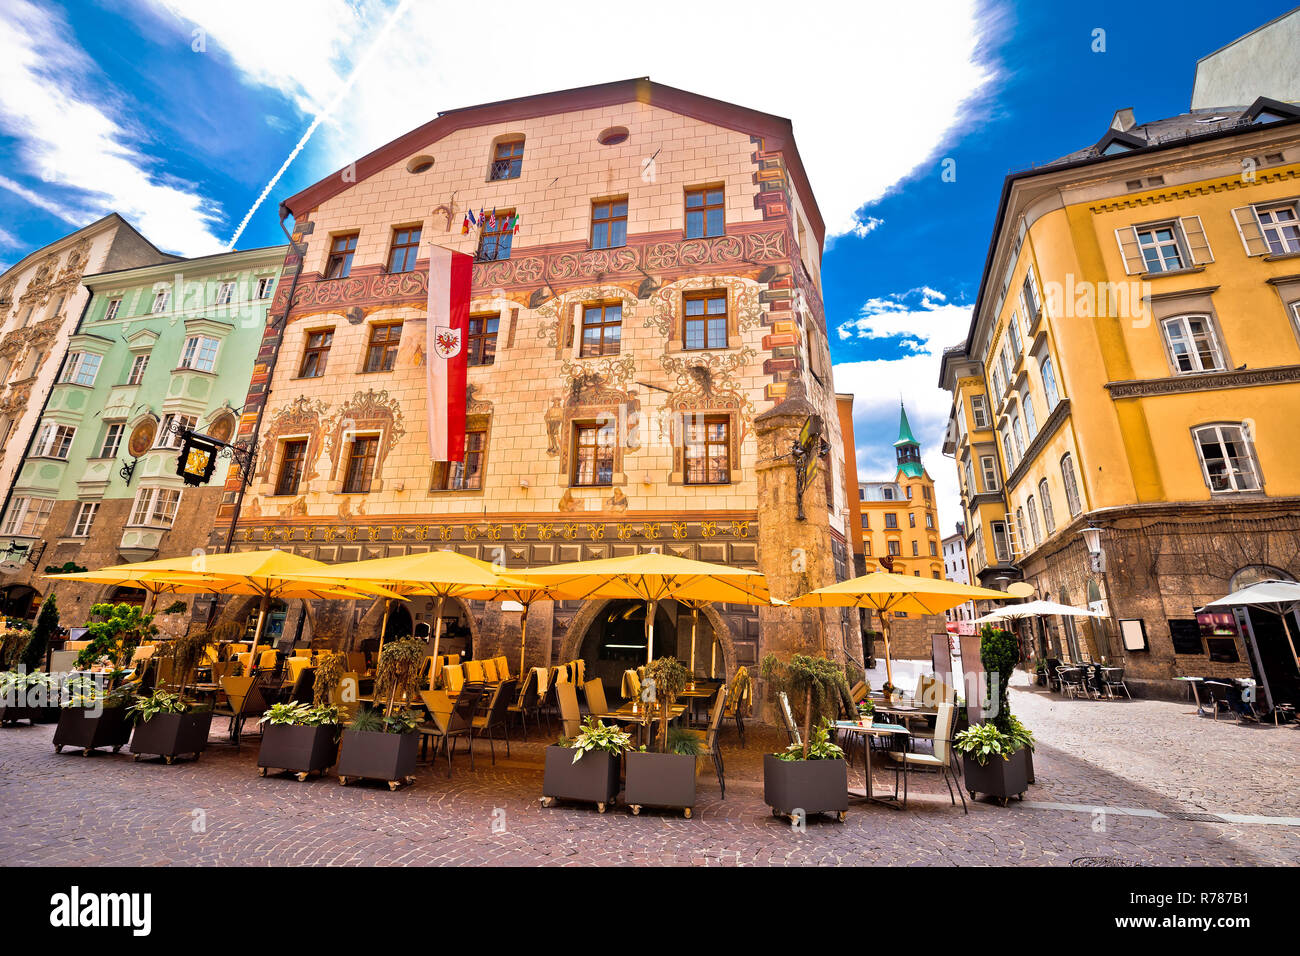 La rue historique d'Innsbruck voir Banque D'Images